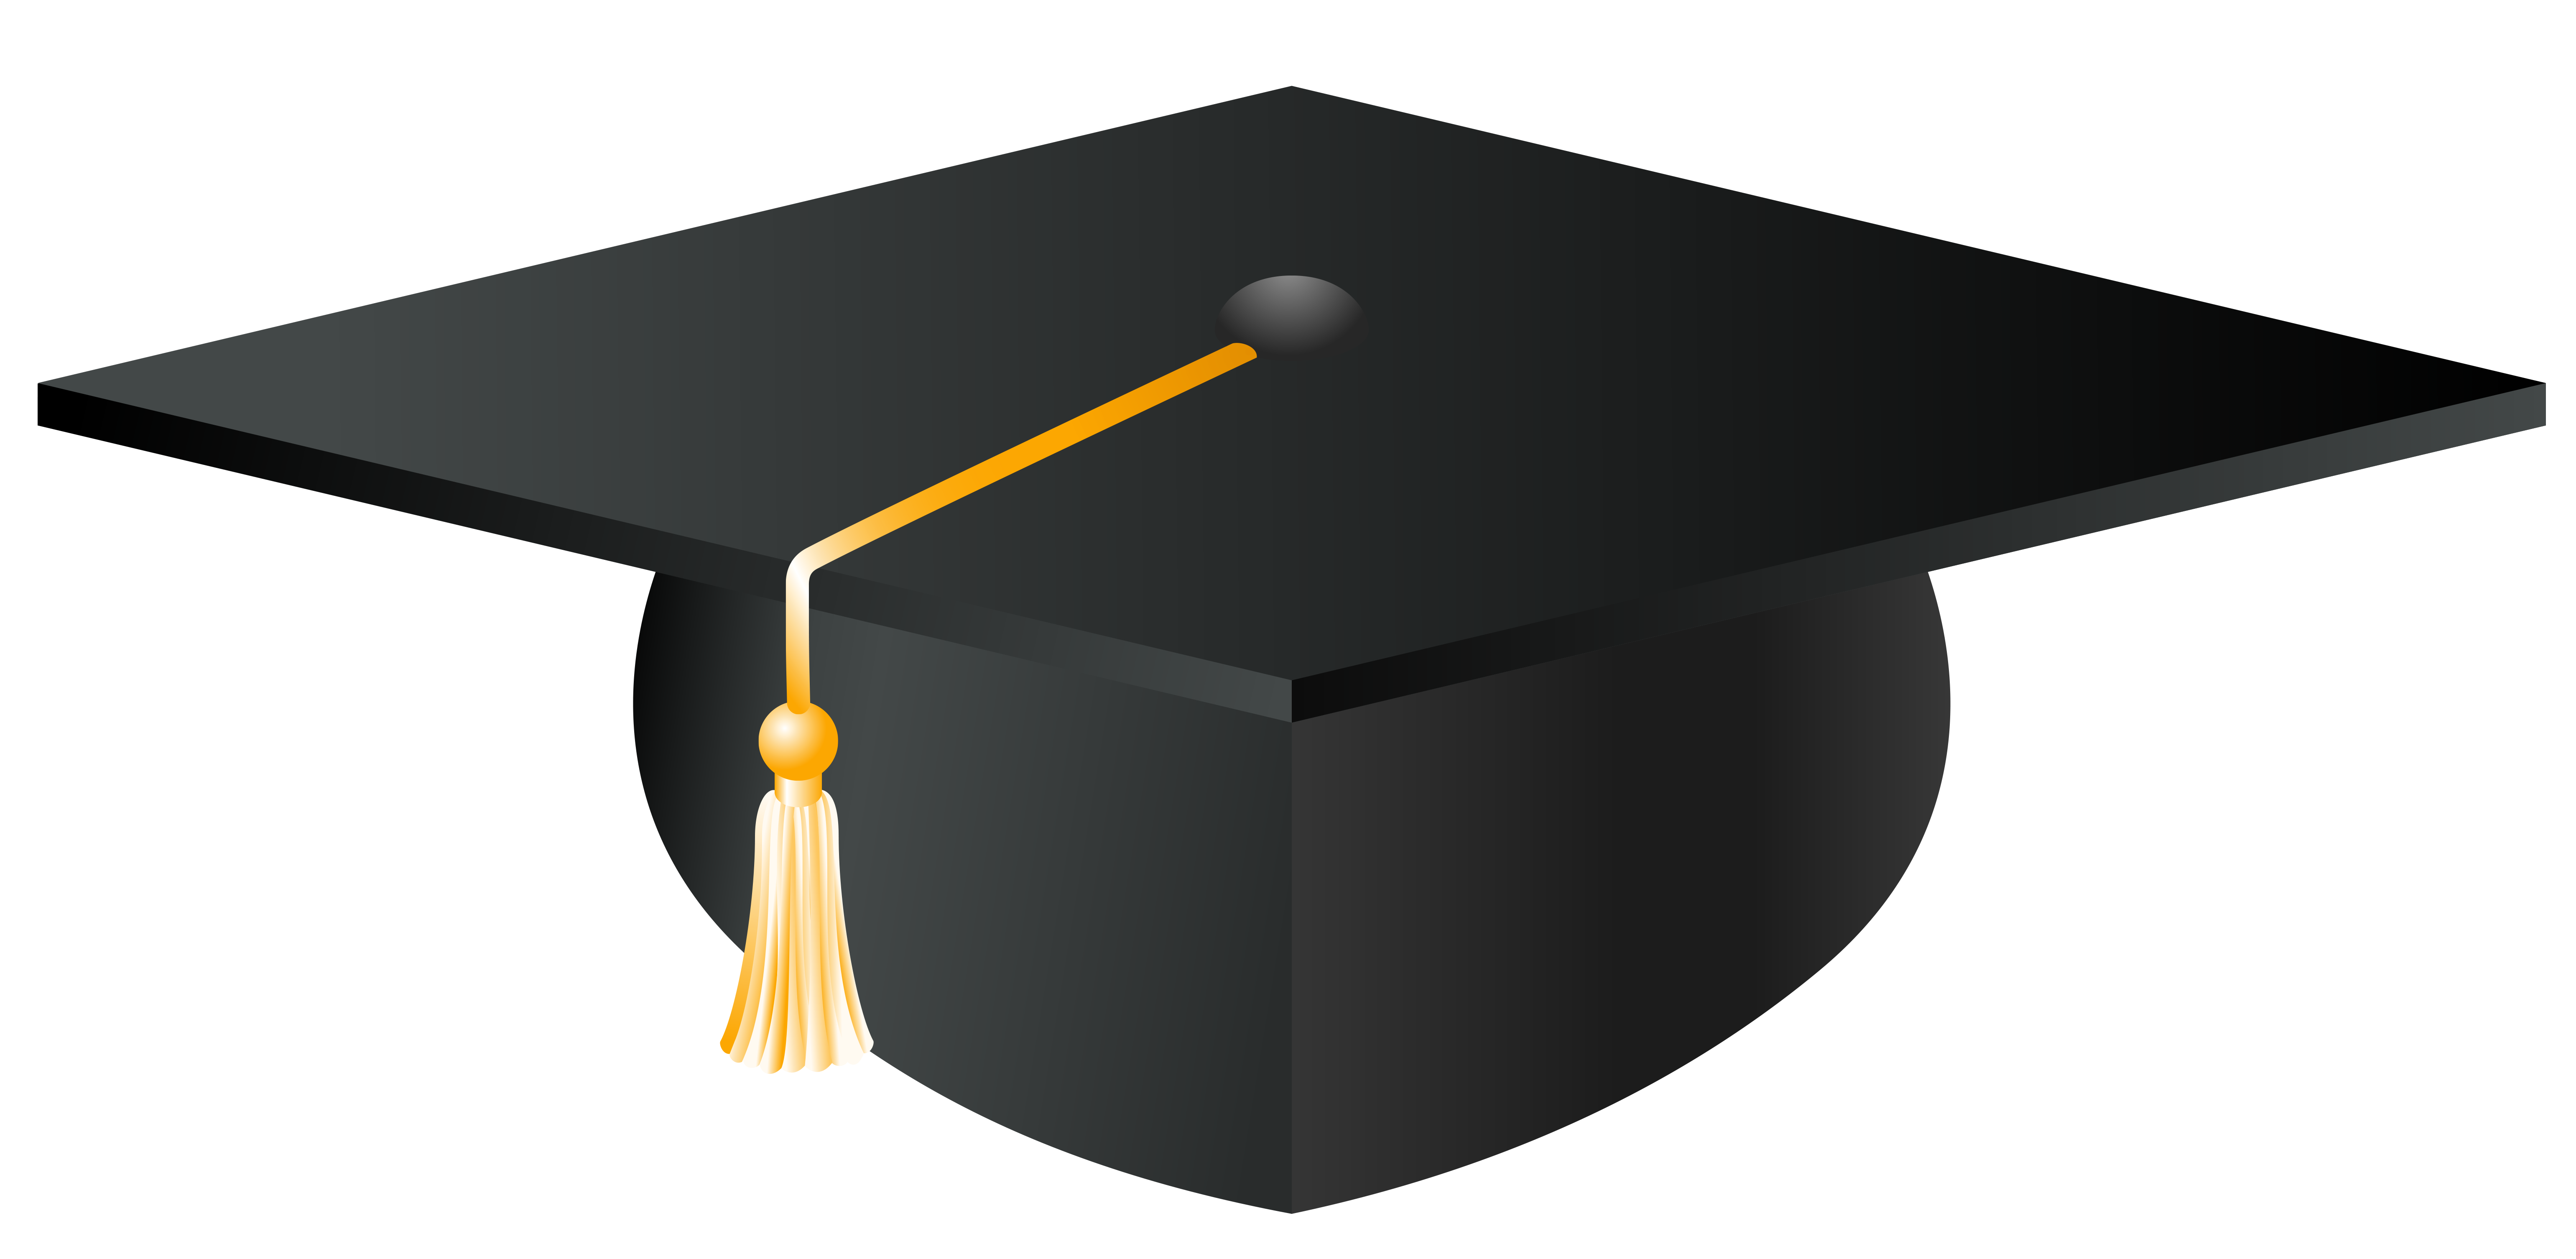 Graduation cap clipart gradua